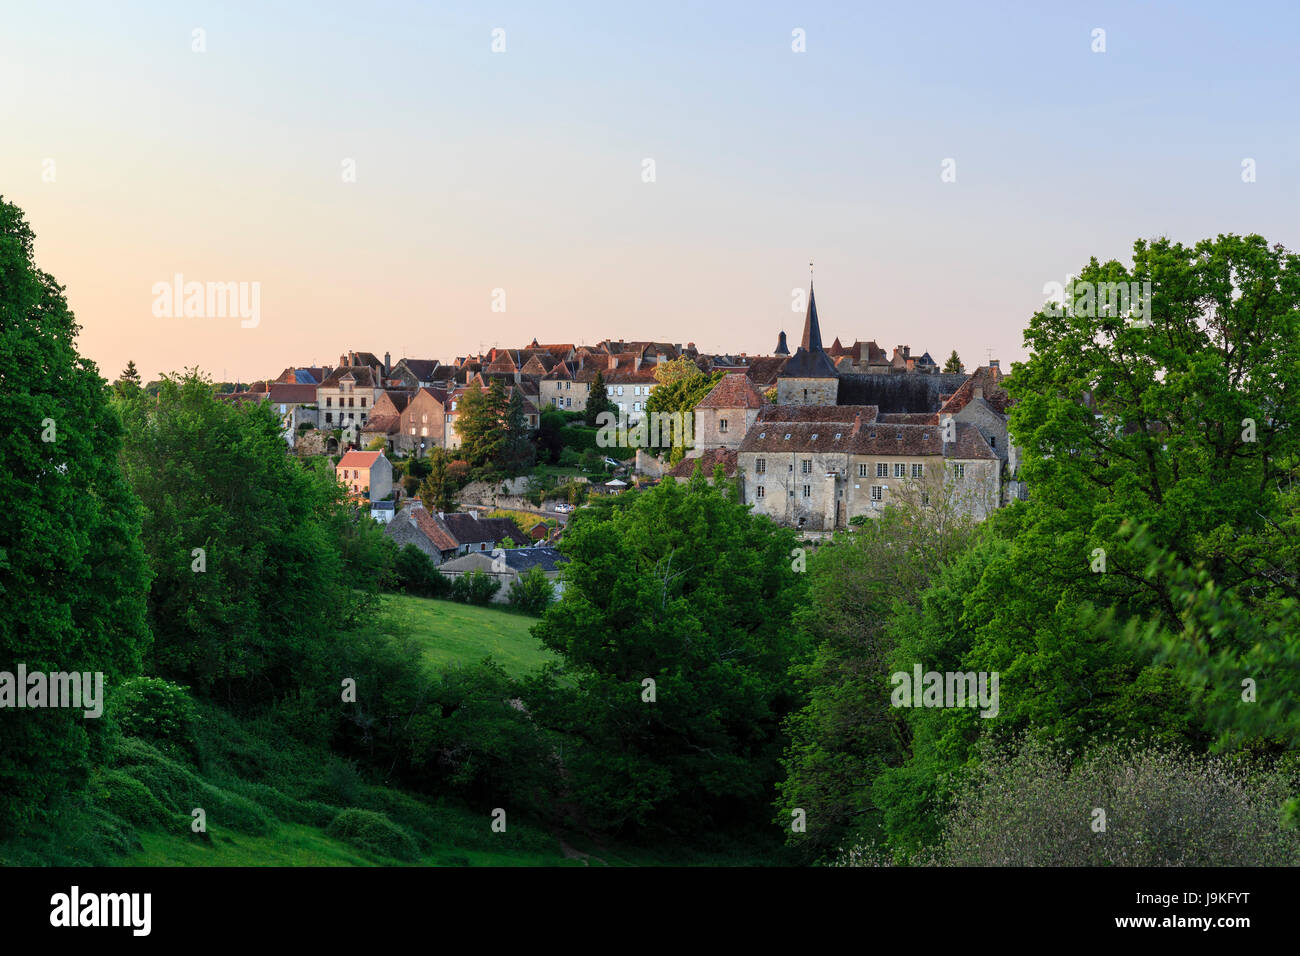 France, Indre, Saint Benoit du Sault, labelled Les Plus Beaux Villages de France (The Most beautiful Villages of France), in evening Stock Photo